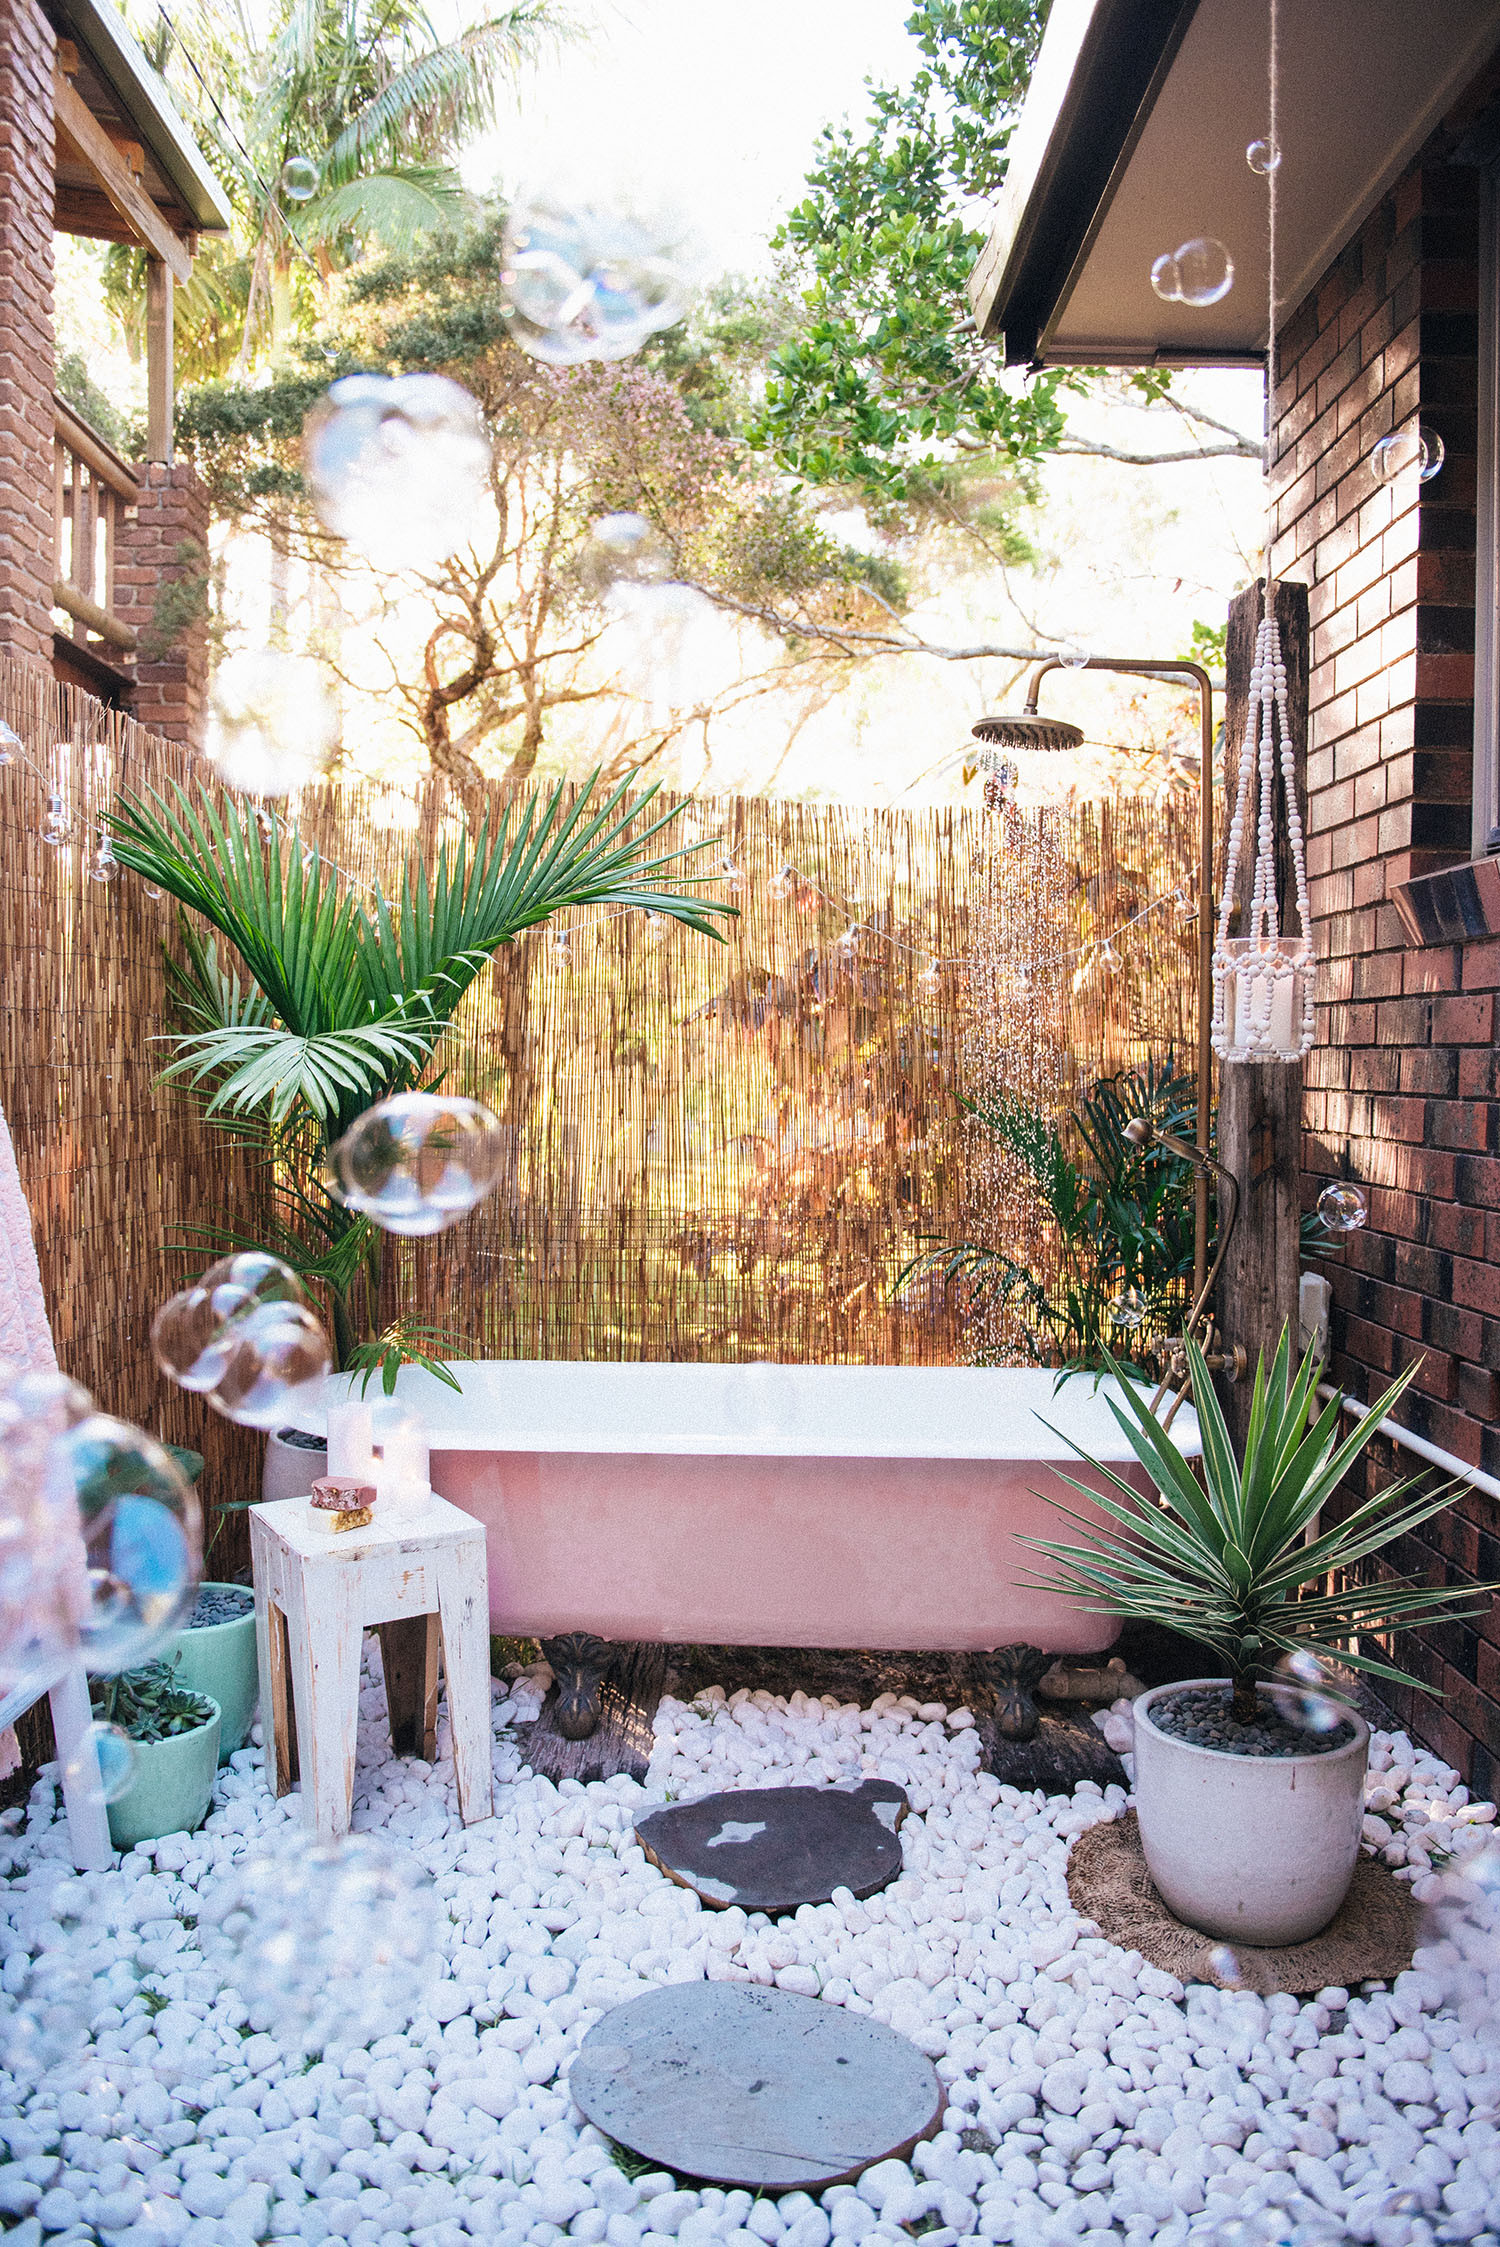 Outdoor Bathtub DIY
 DIY OUTDOOR BATH – Spell & the Gypsy Collective